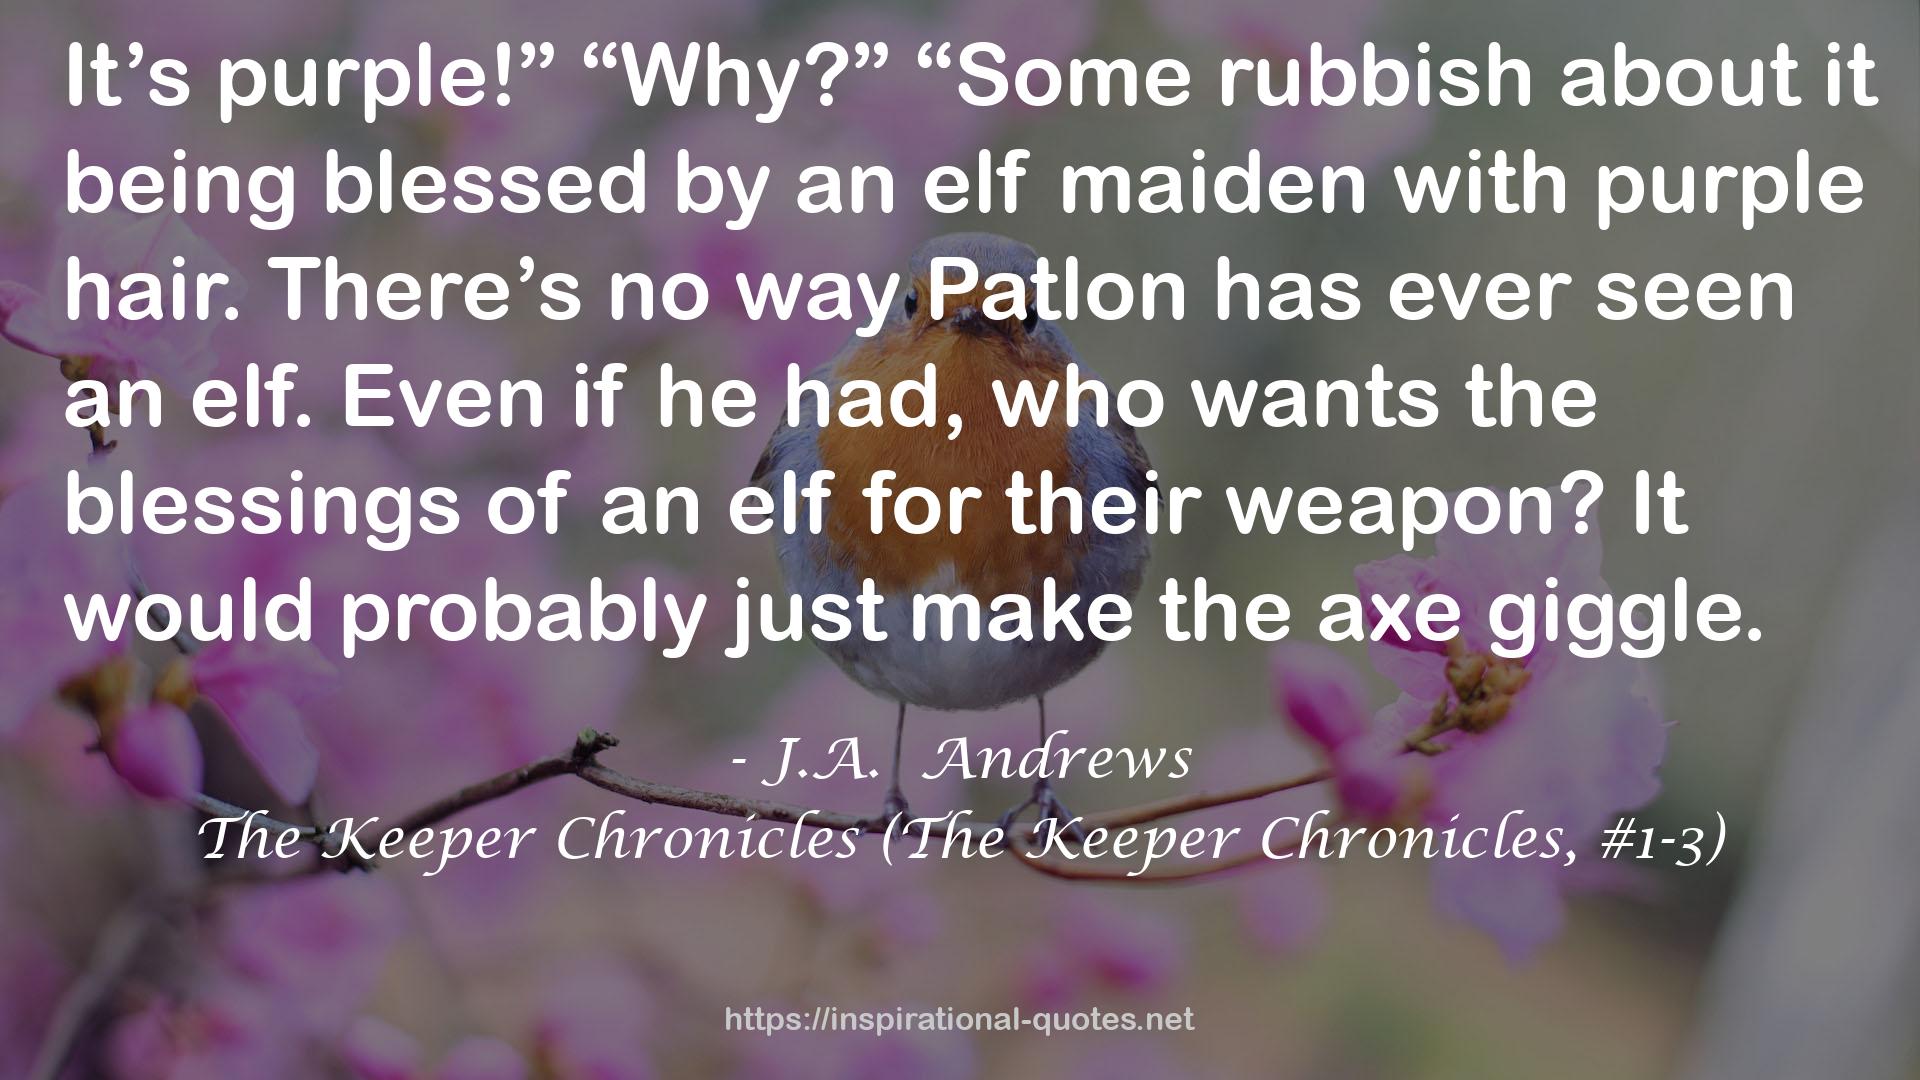 The Keeper Chronicles (The Keeper Chronicles, #1-3) QUOTES